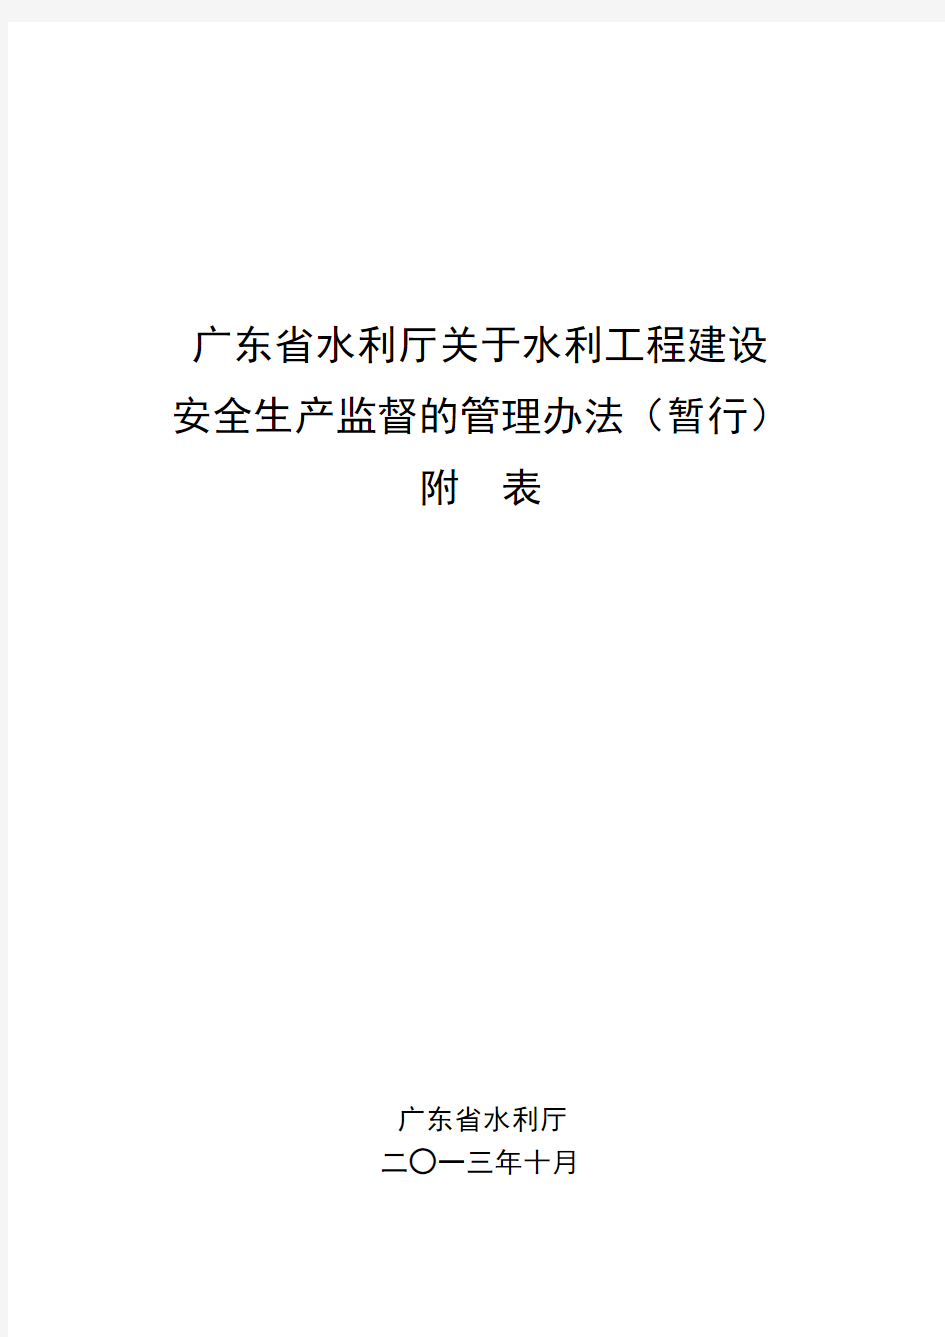 广东省水利厅关于水利工程建设安全生产监督的管理办法(暂行)附表(1725)号